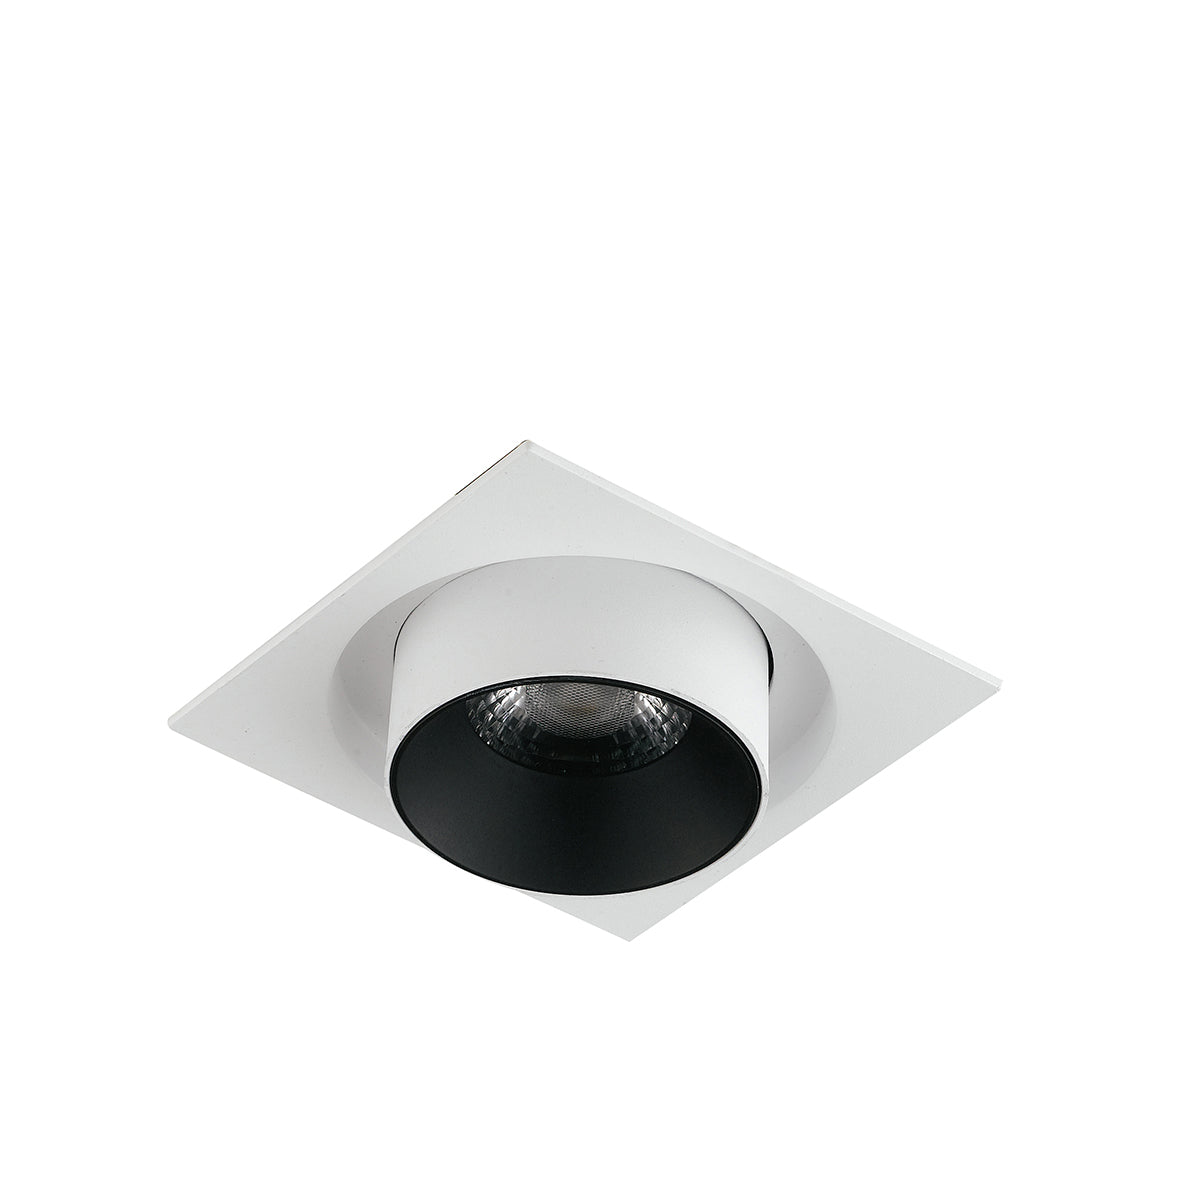 Luminaria empotrable LED OUTSIDER con foco y cabezal extraíble y orientable 30W